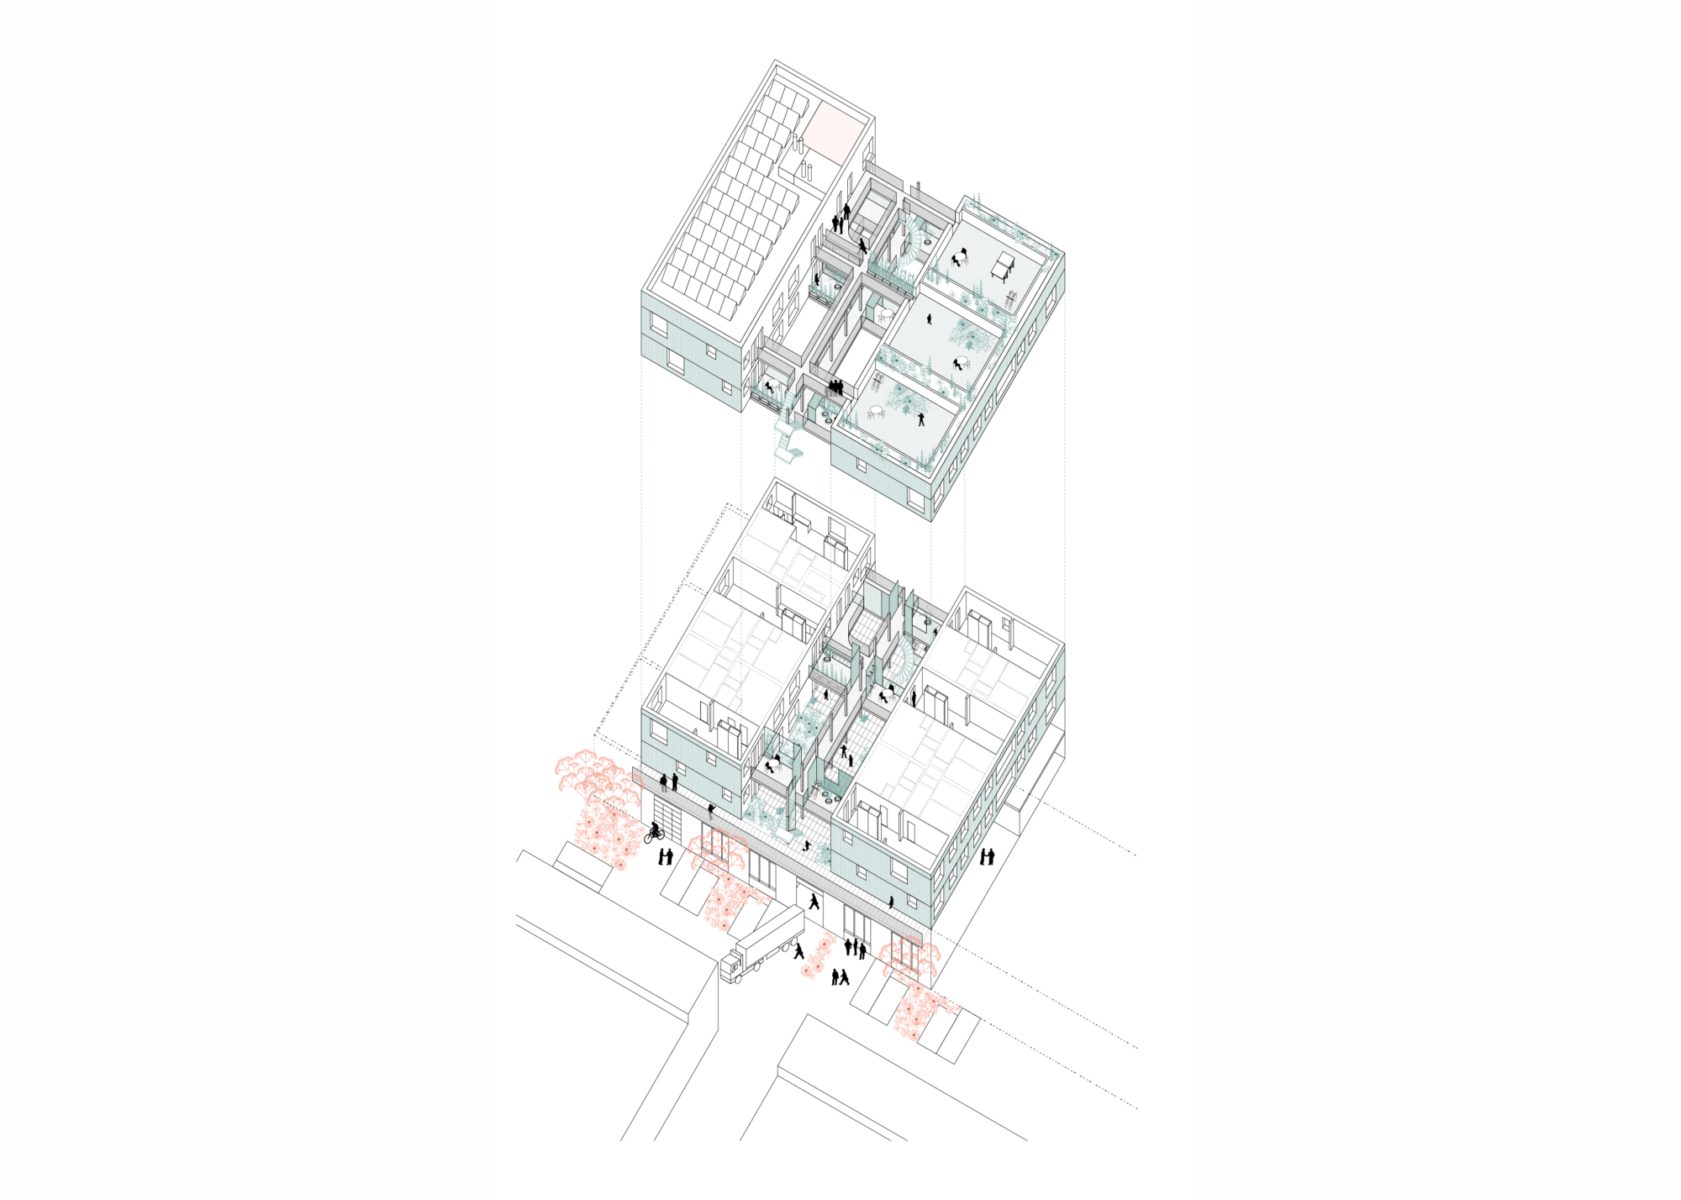 Principe architectural : Au rez-de-chaussée, les ateliers des PME, au-dessus de ce socle les logements et divers espaces collectifs.